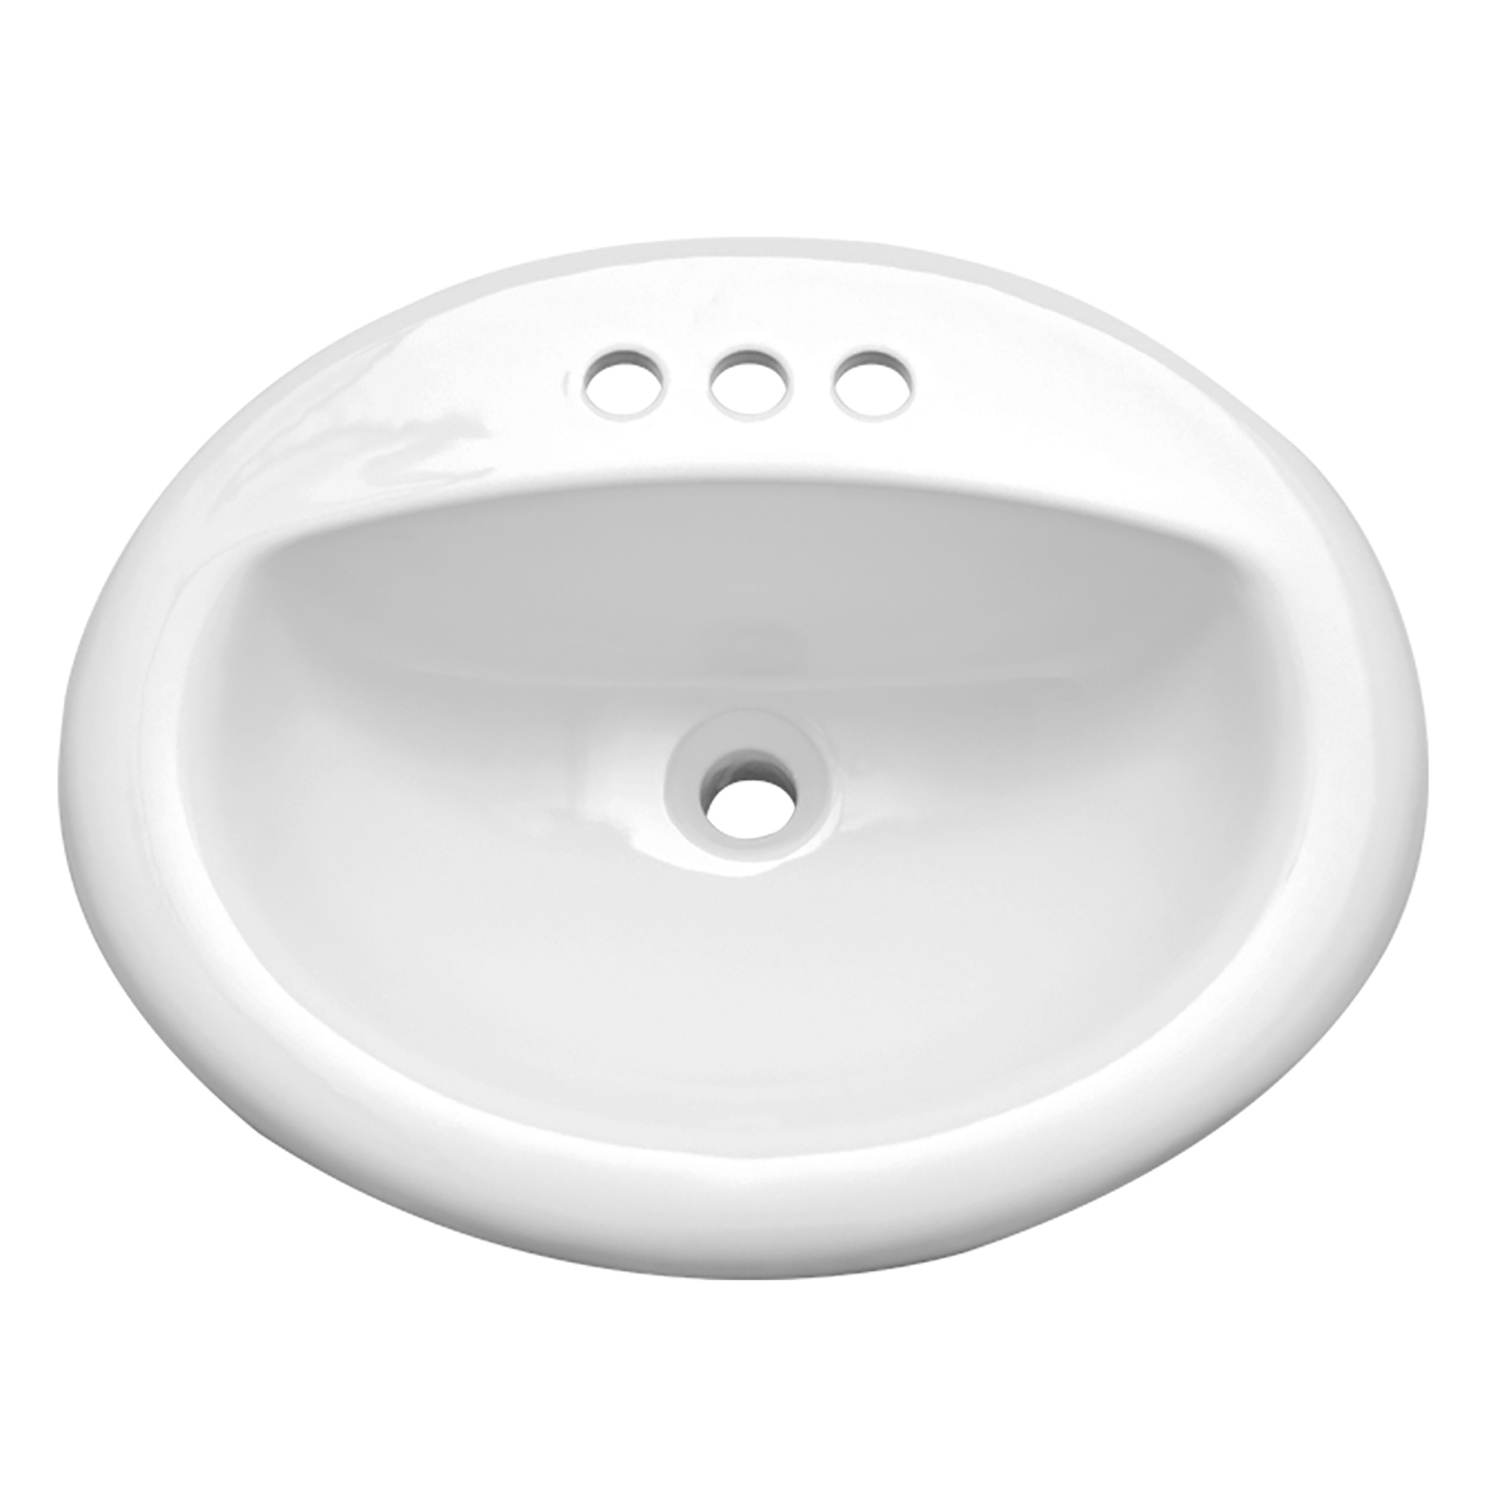 C273 20" x 17" White Oval Ceramic Bathroom Vanity Drop in Sink